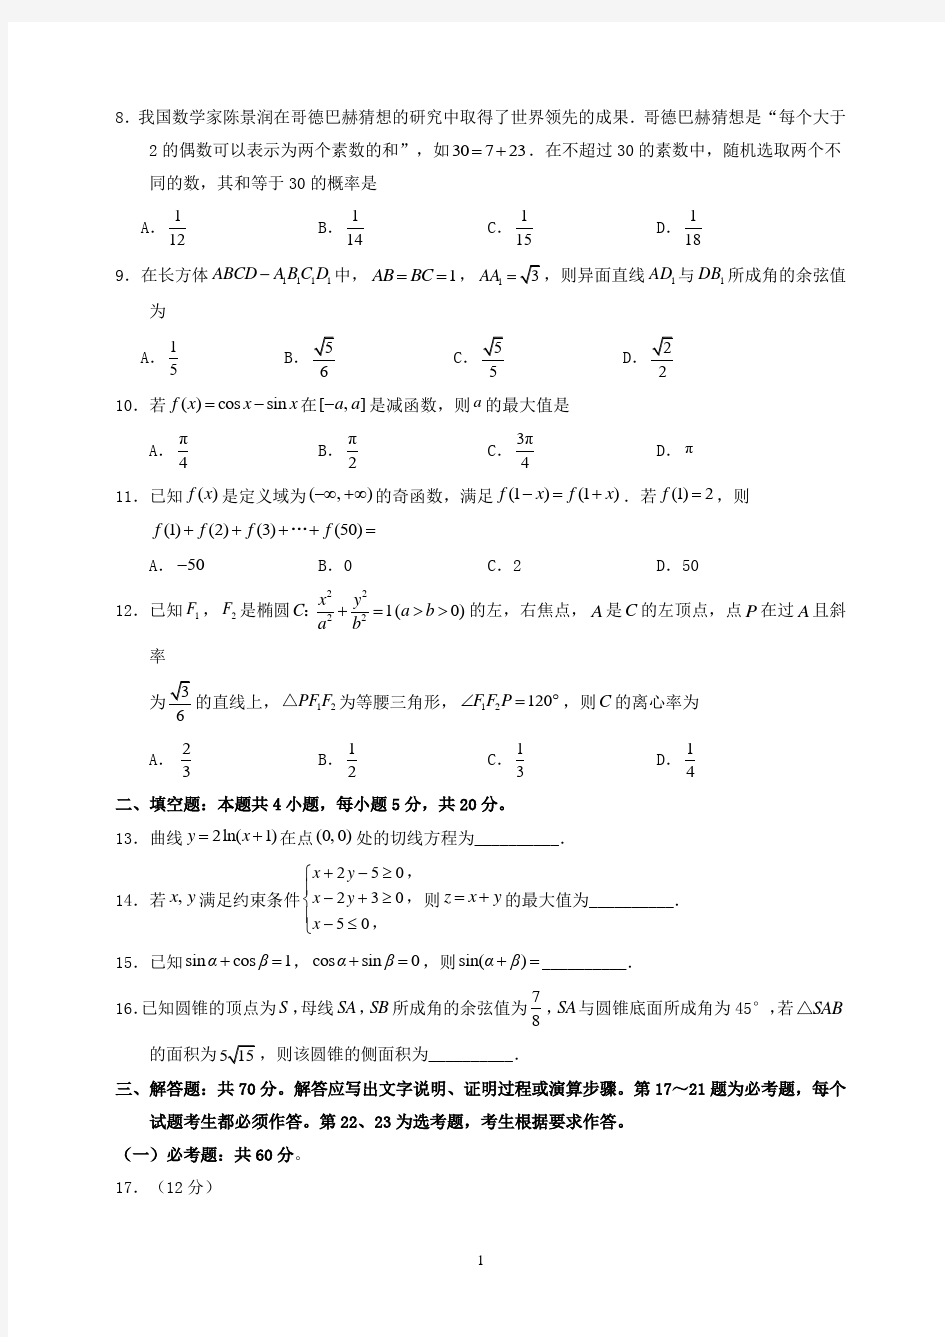 2018年重庆市高考理科数学试题与答案